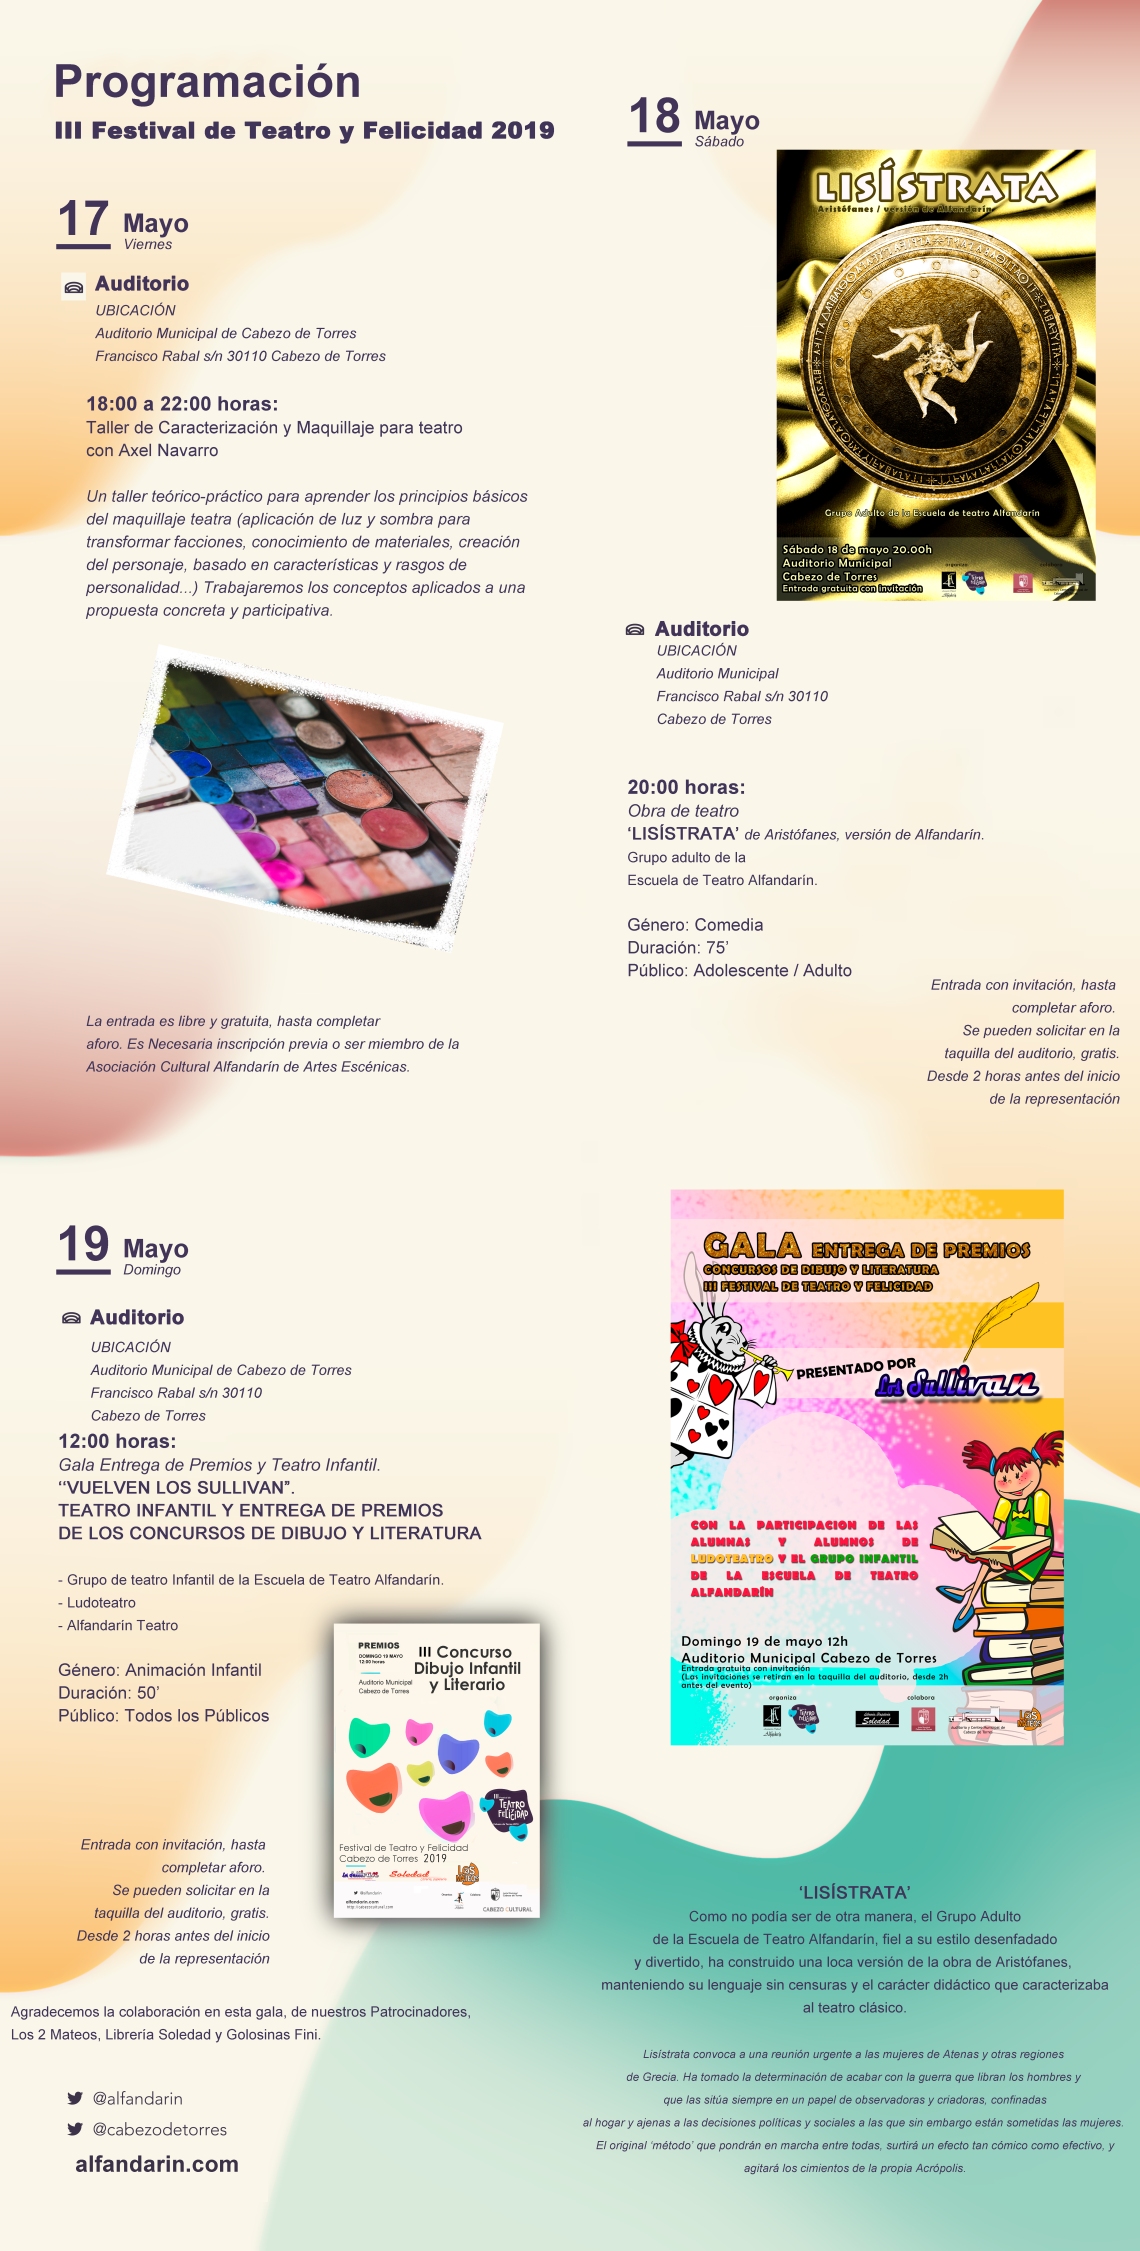 Programa_De_Mano-interior 2019